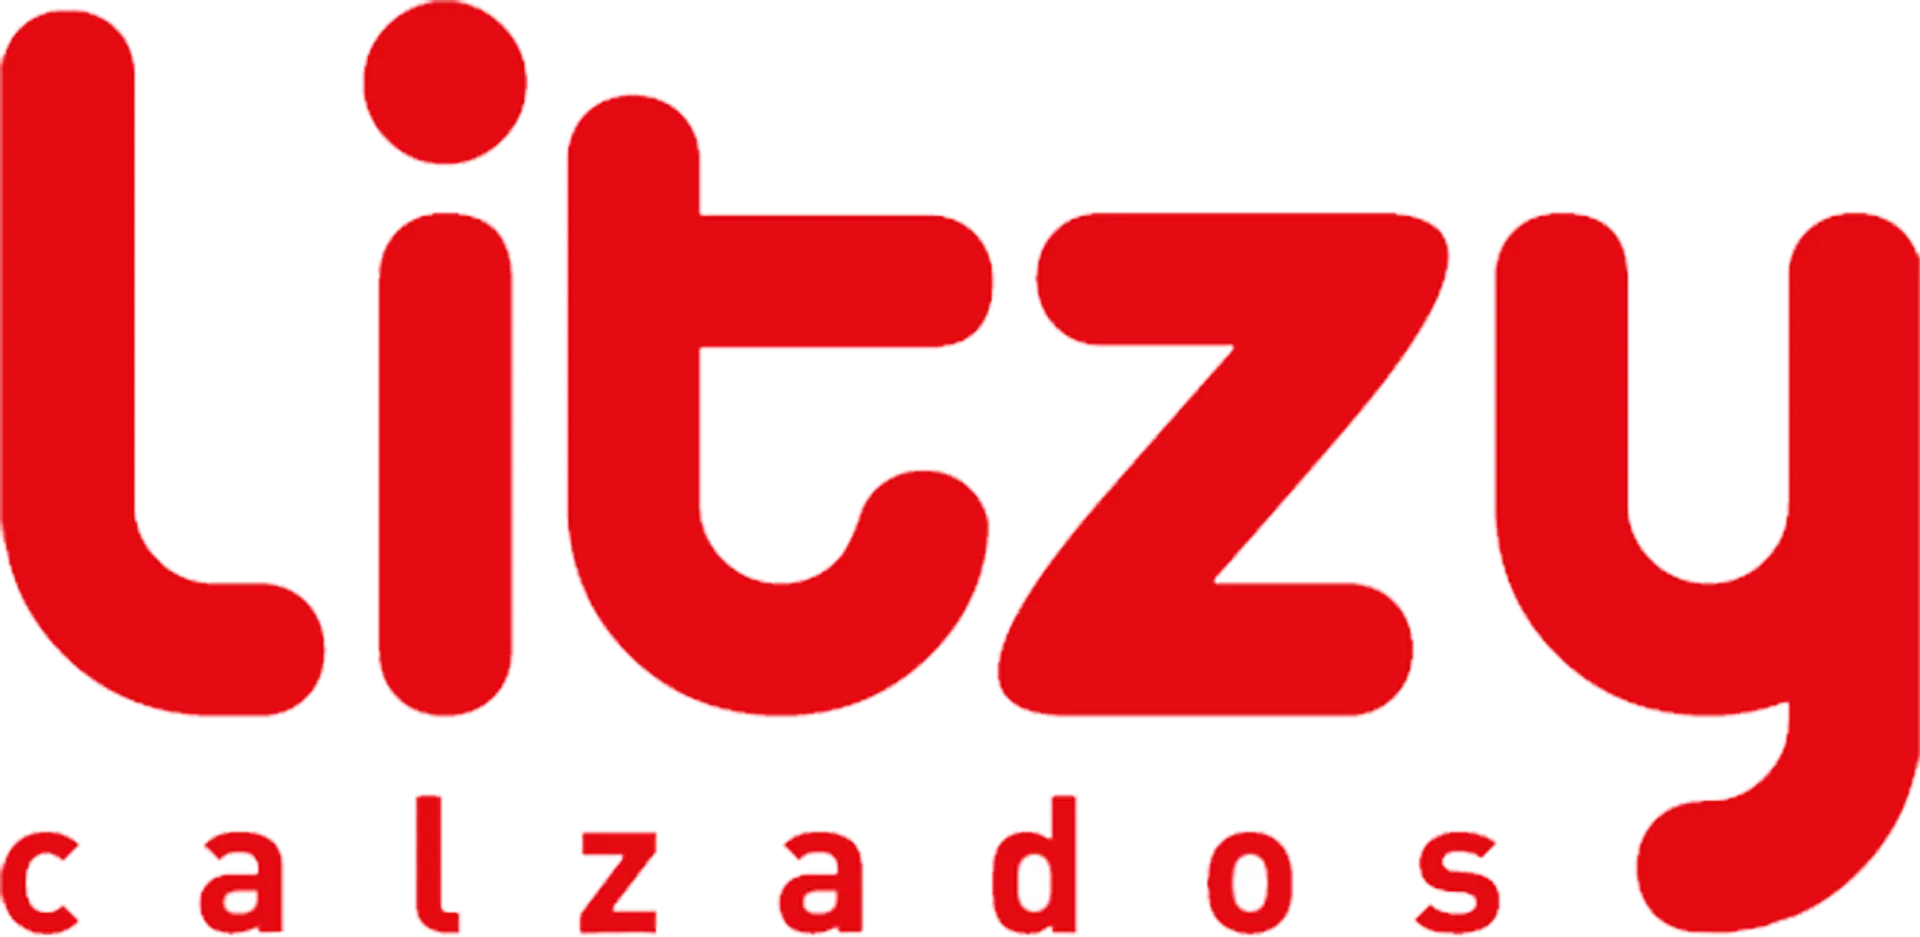 LITZY CATALOGO logo